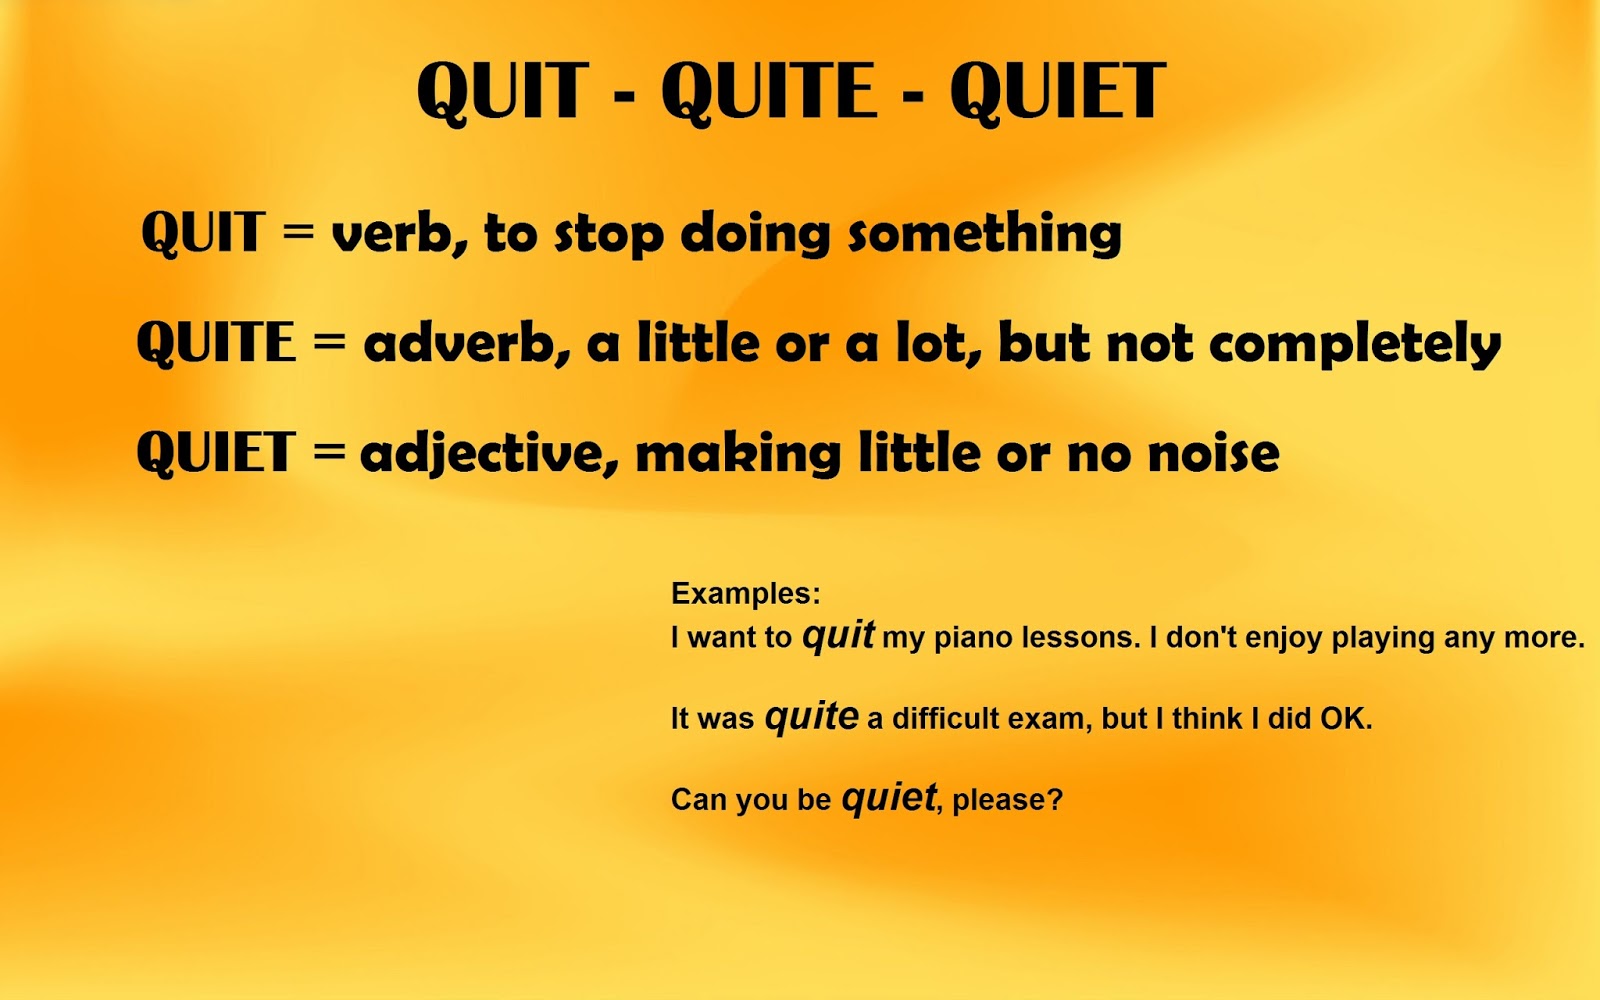 Quite. Quiet quitting